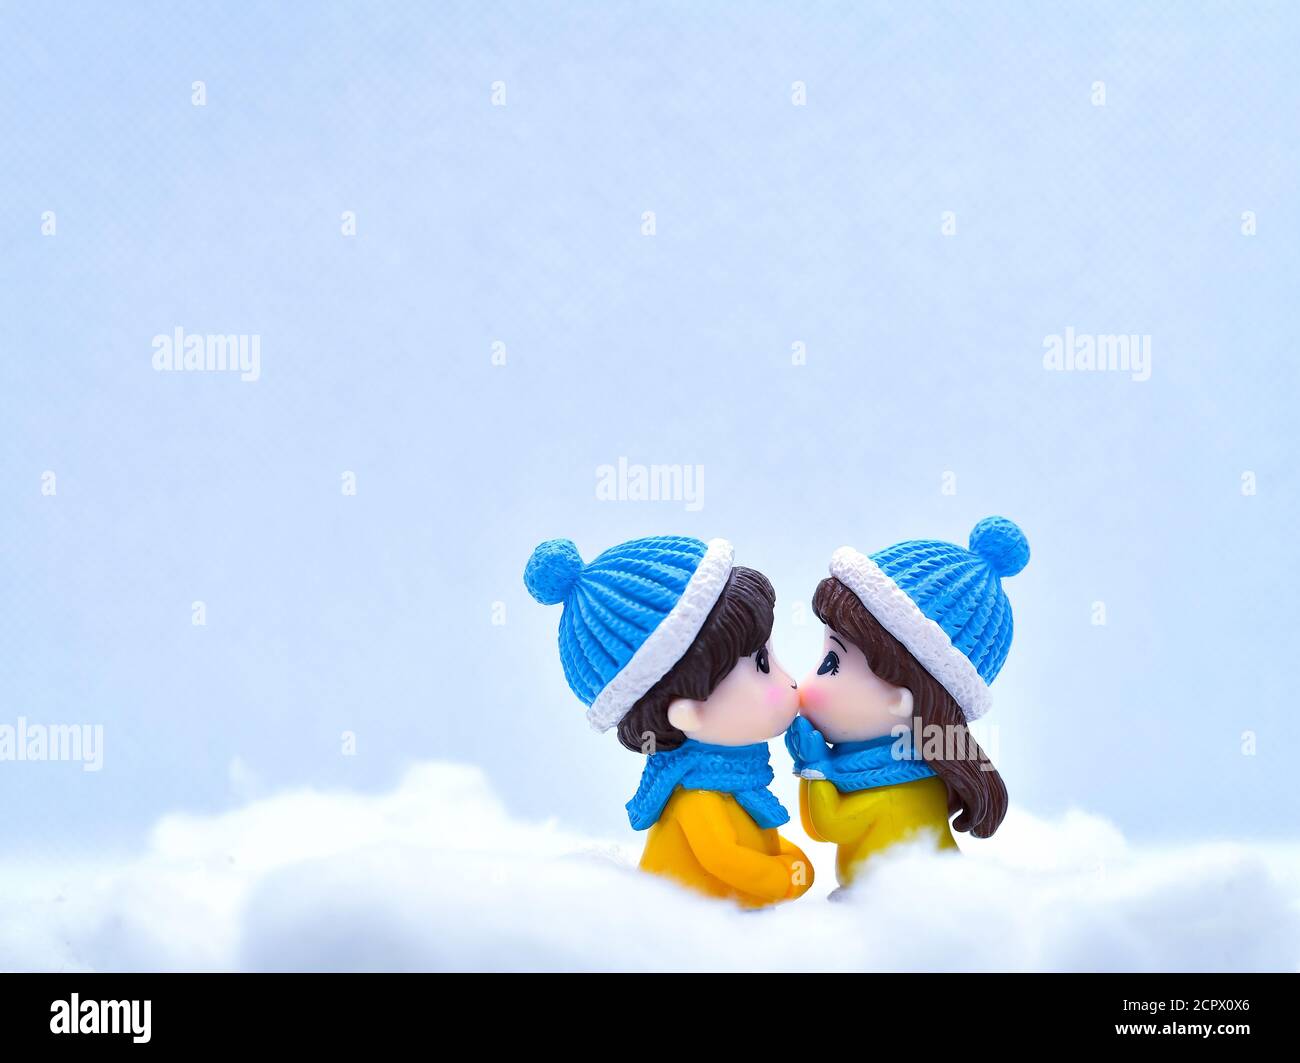 Tourisme et Voyage concept: Les personnes miniatures s'embrassant dans la neige d'hiver Banque D'Images